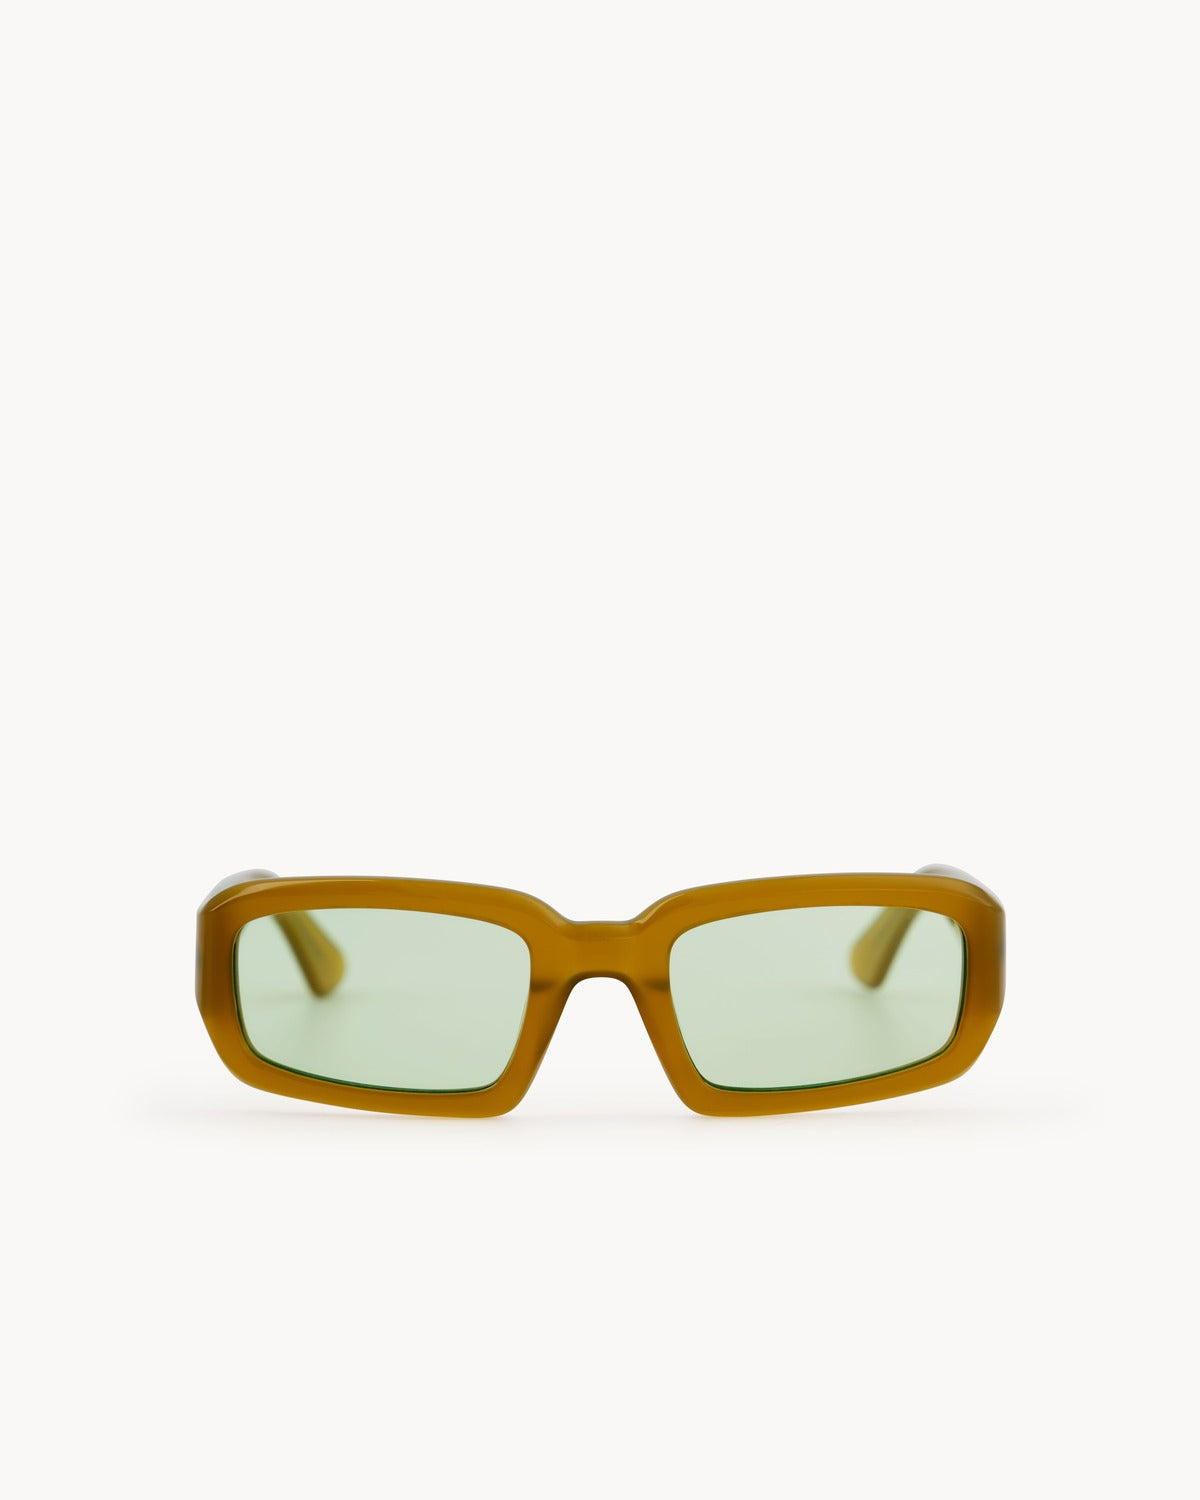 Port Tanger Mektoub Sunglasses in Yellow Ochra Acetate and Mint Lenses 1